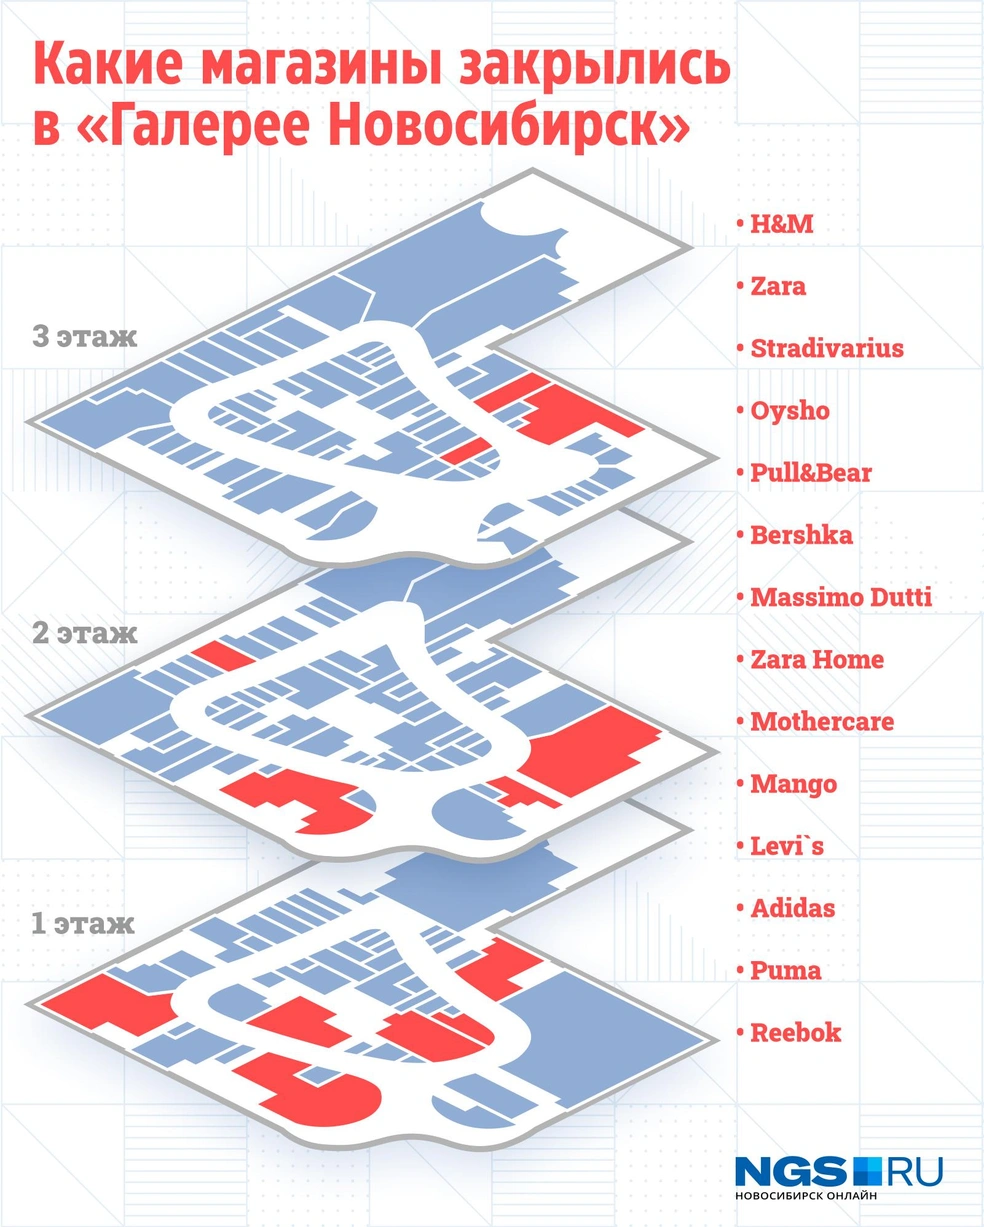 Сколько магазинов мировых брендов закрылись в марте в Новосибирске — полный  список. Какие магазины закрылись в Новосибирске в марте. Какие известные магазины  закрылись в марте в Новосибирске. 28 марта 2022 - 28 марта 2022 - НГС.ру